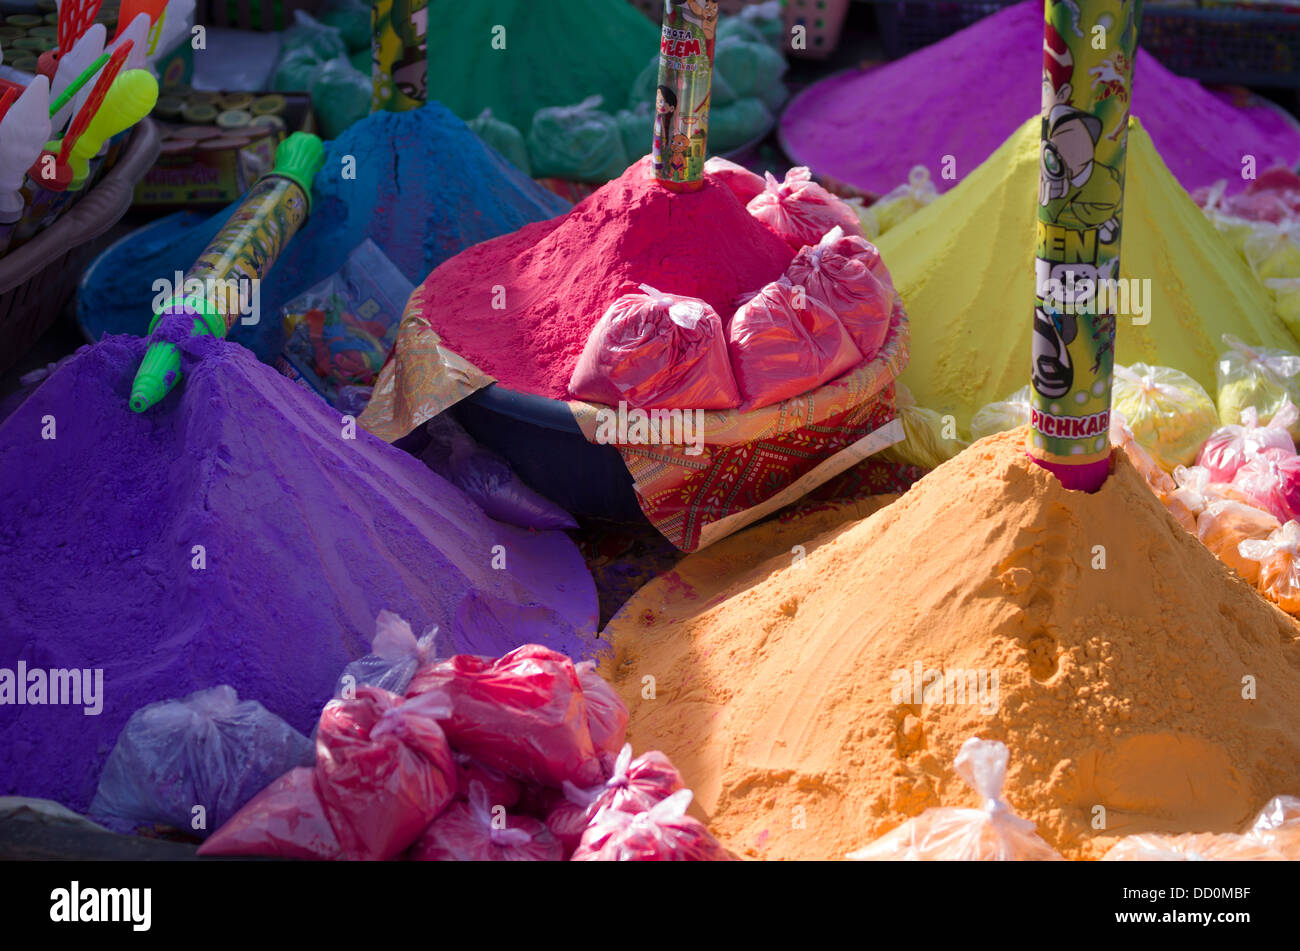 Festival de Holi et de peintures en poudre sur la vente - Jodhpur, Rajashtan, Inde Banque D'Images